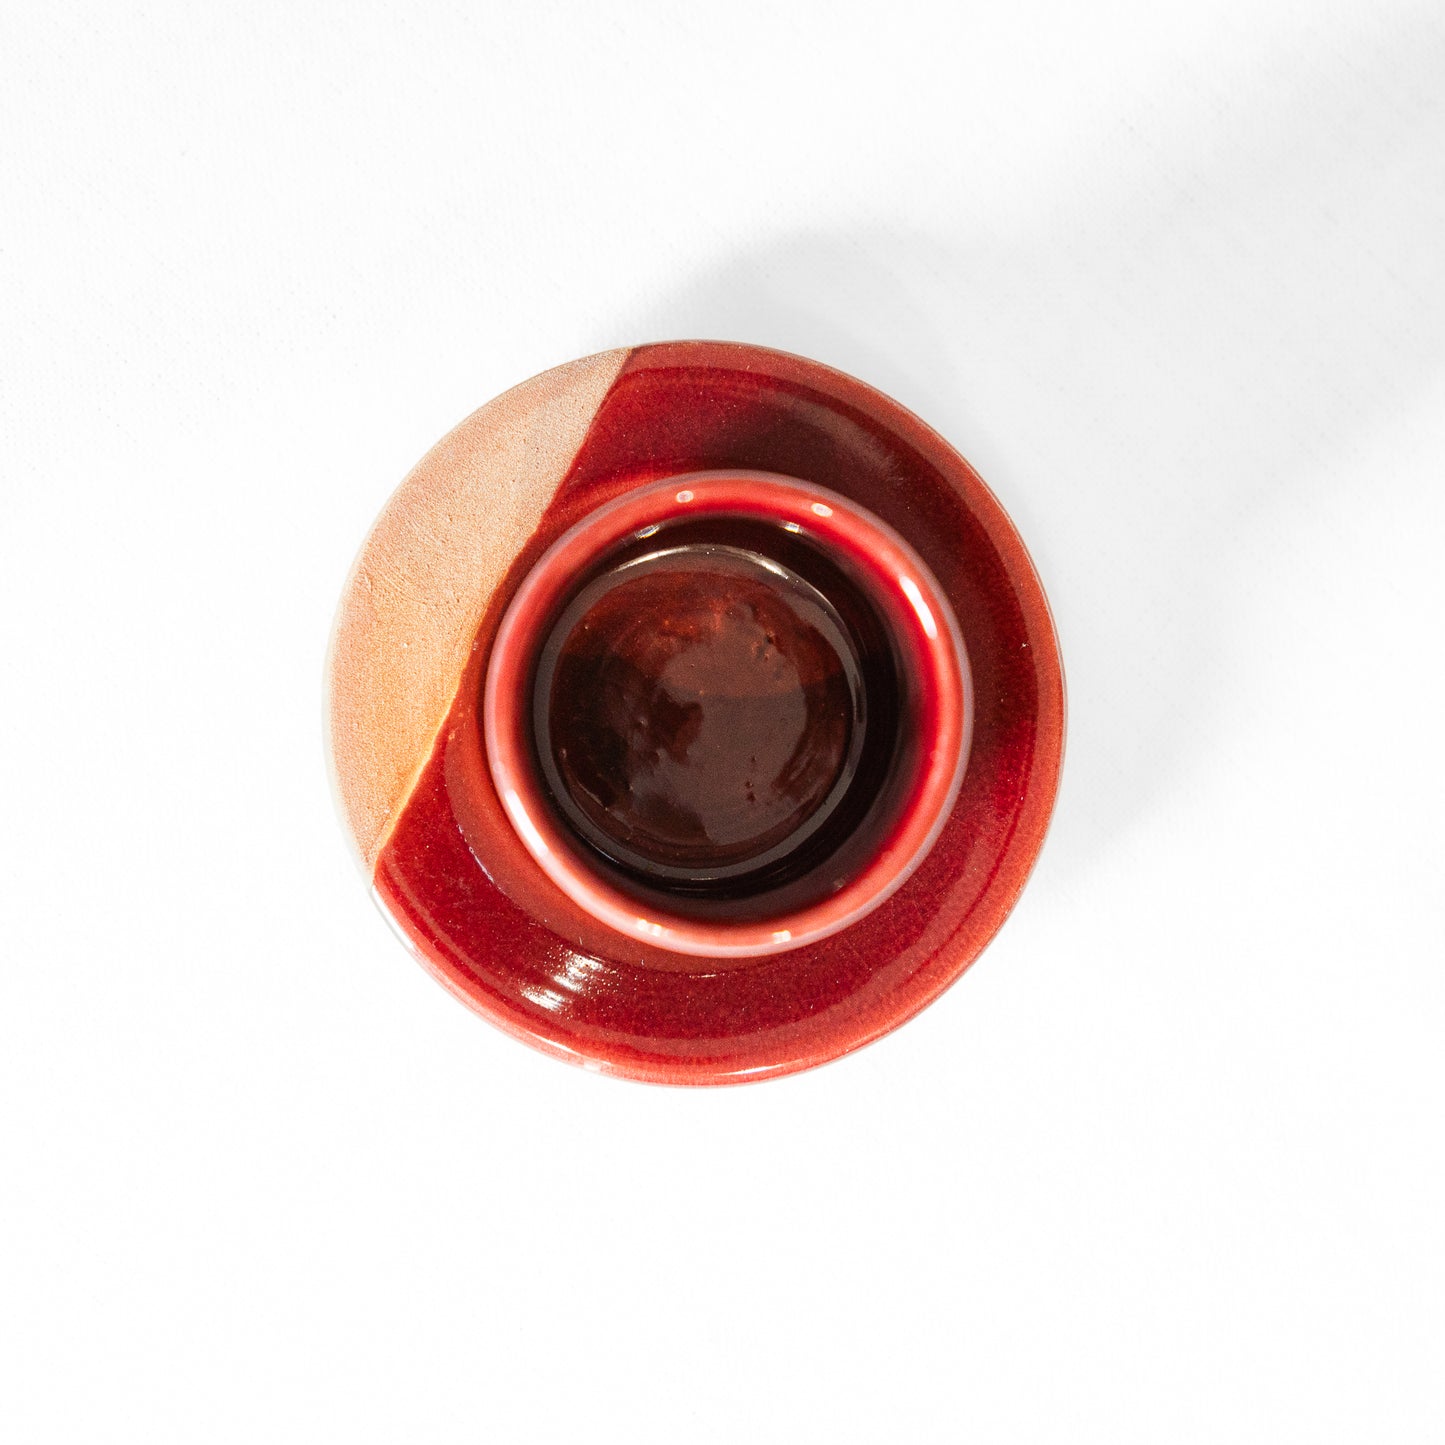 Tasse à café artisanale en terre cuite bordeaux 6cm